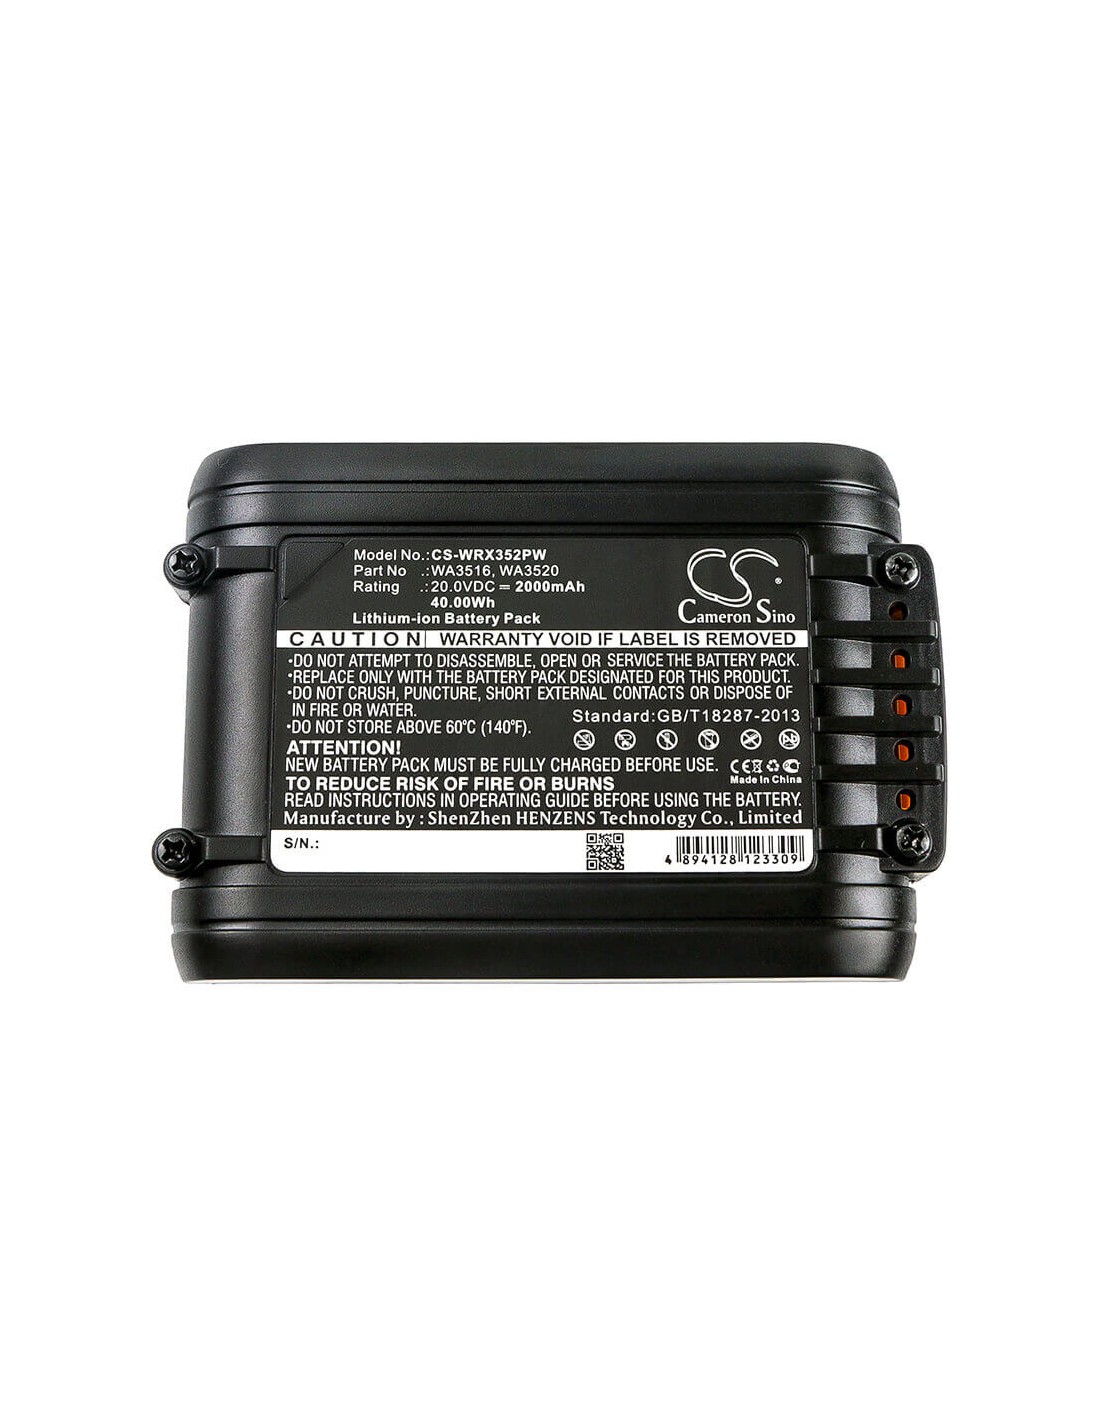 Battery for Worx, Wg154e, Wg160e, Wg160e.5, Wg169e 20V, 2000mAh - 40.00Wh